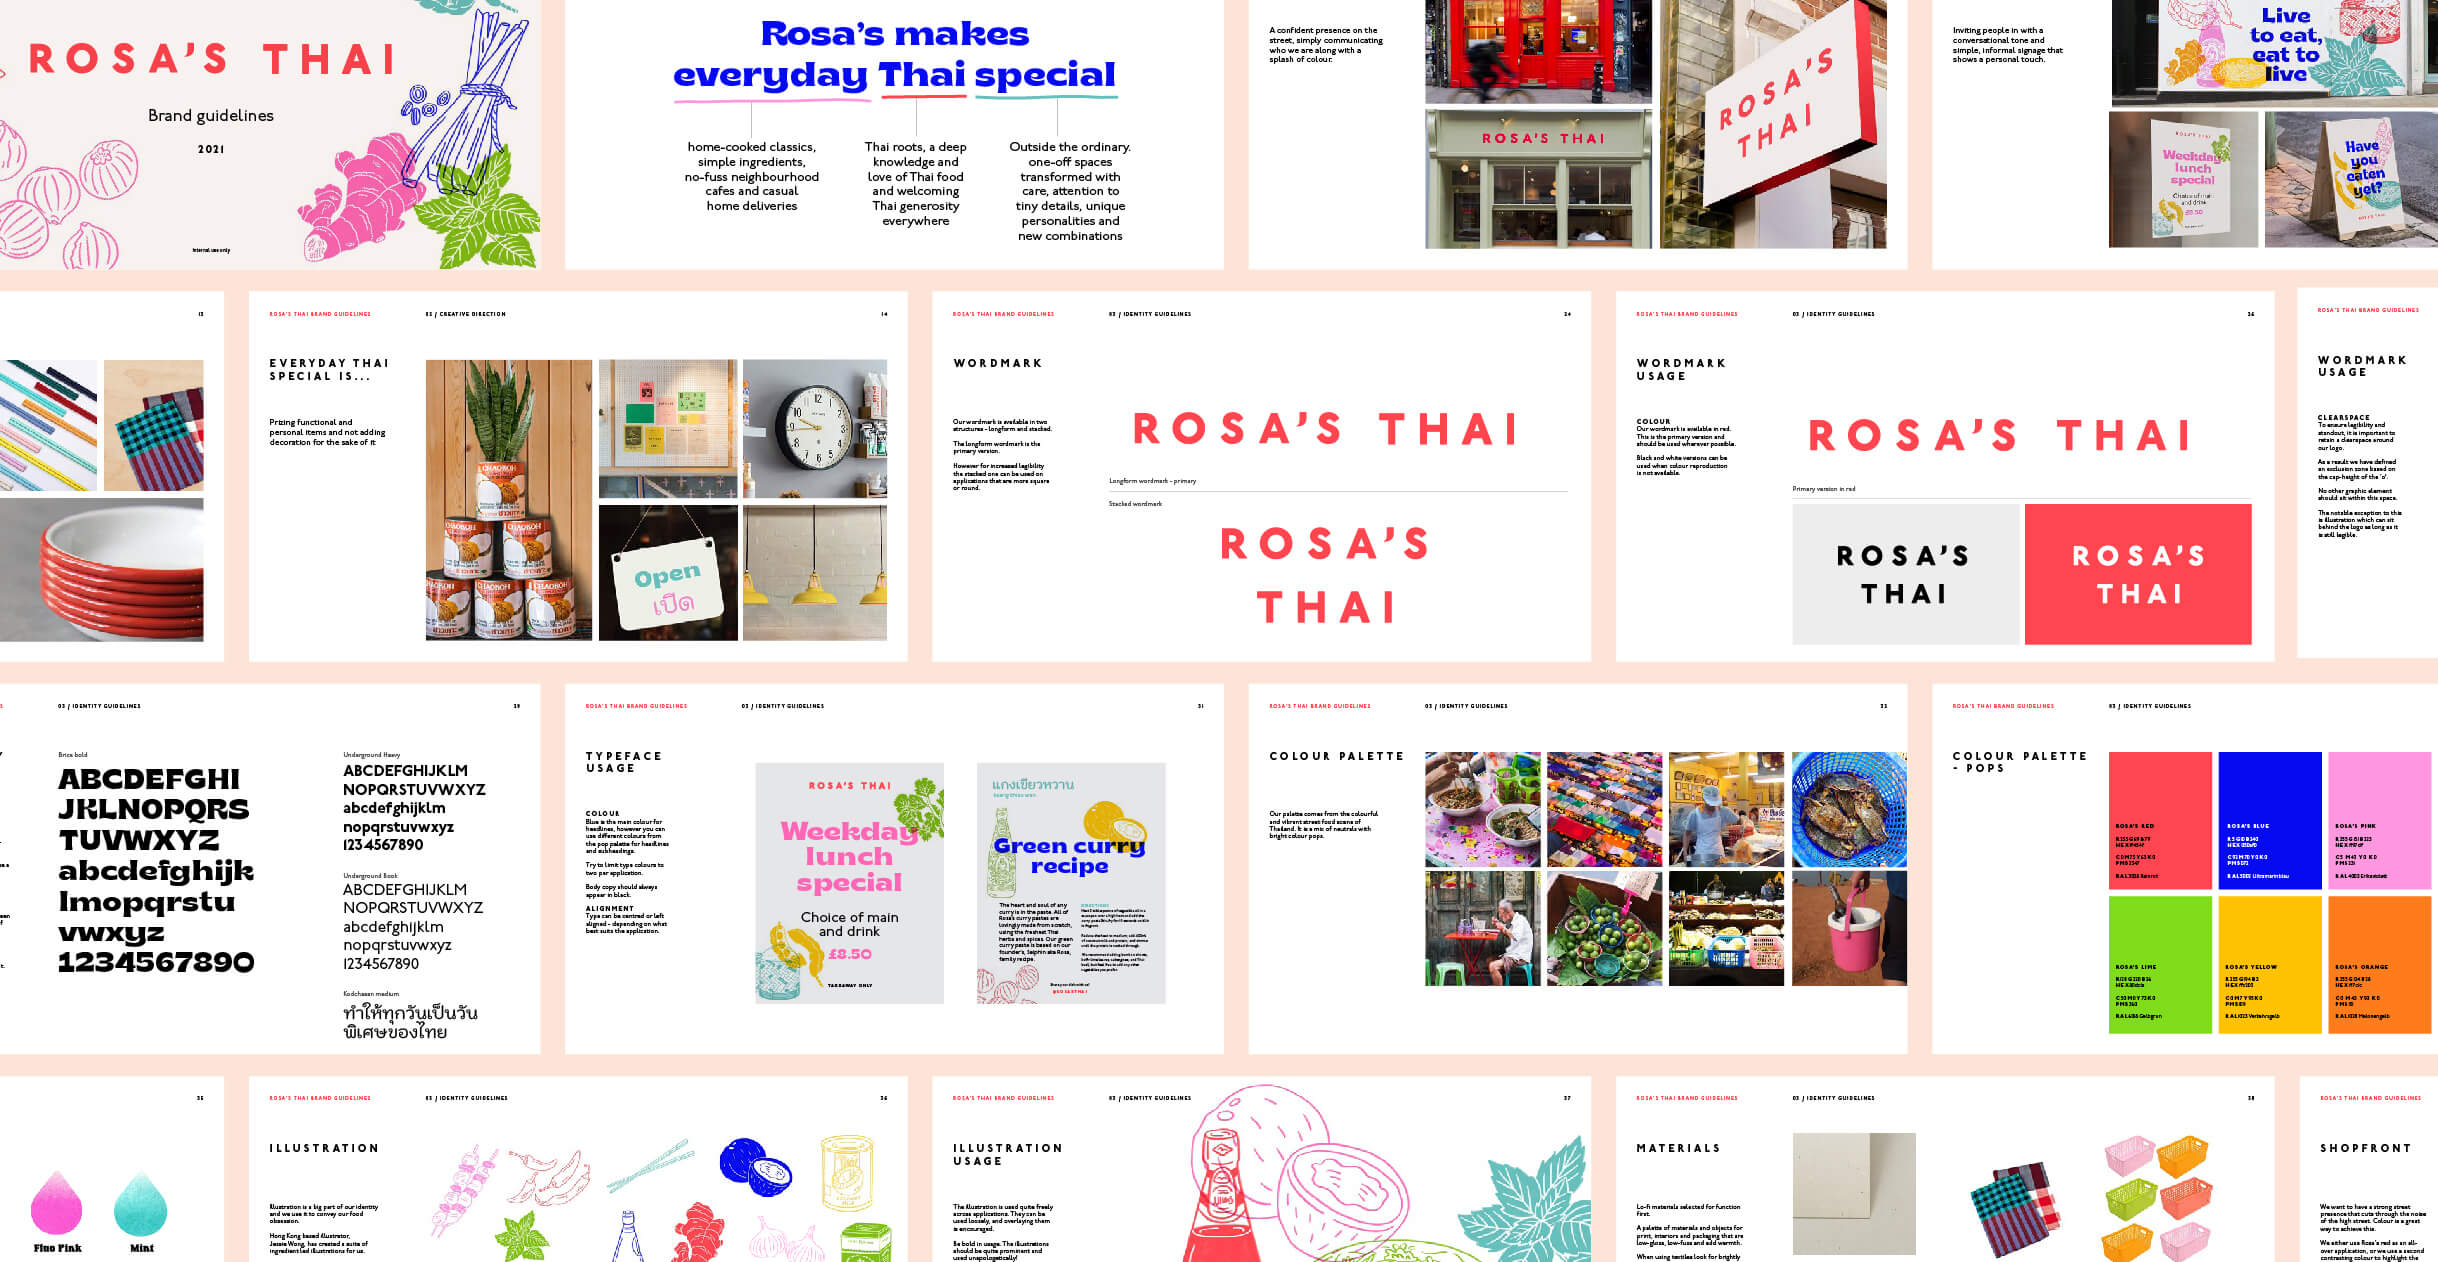 Rosa's Thai brand guidelines